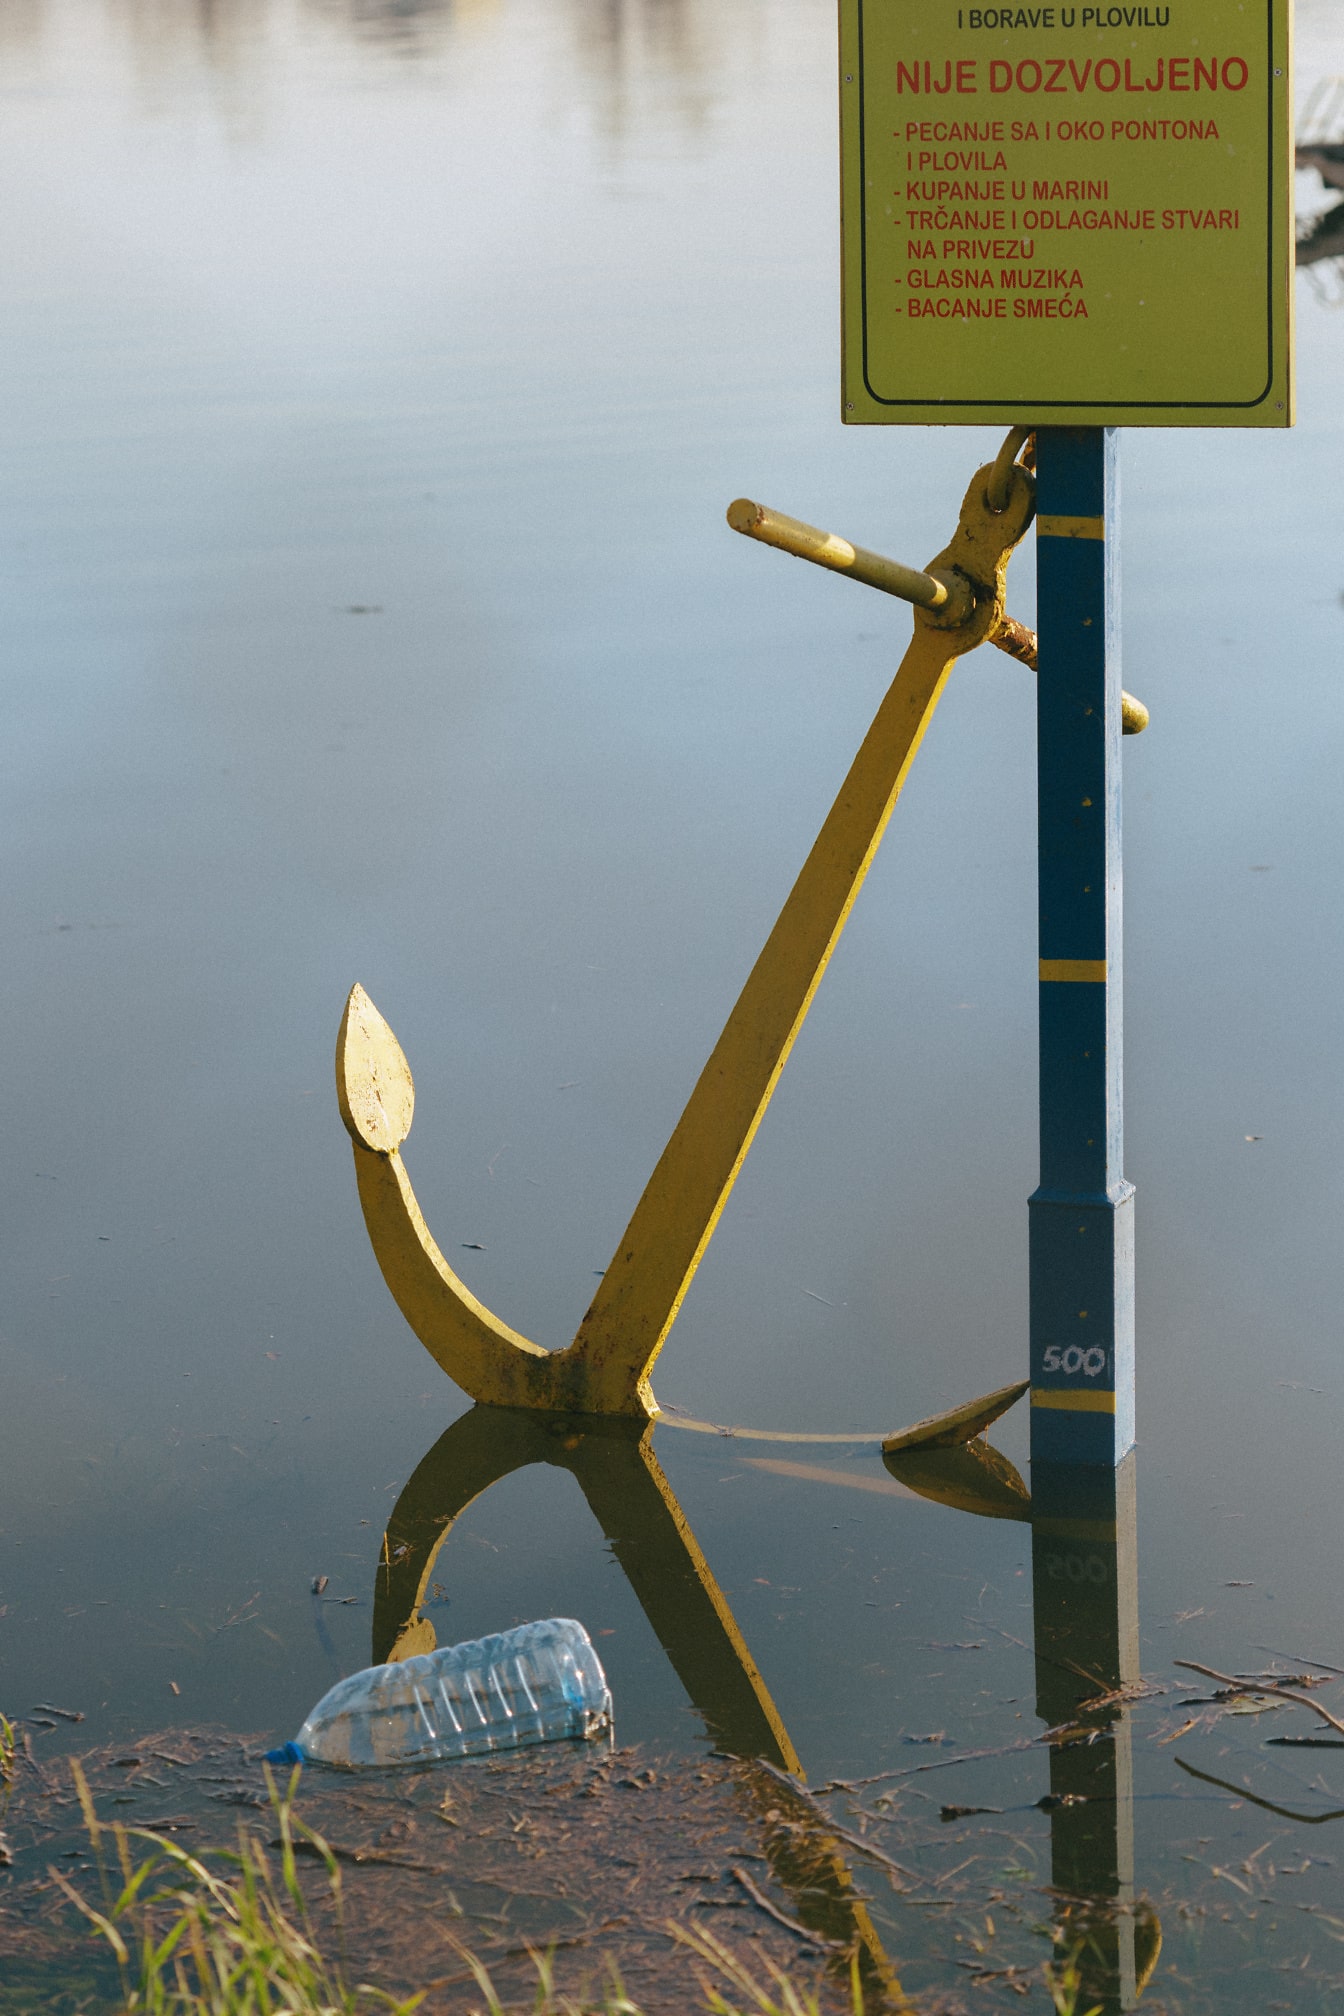 Желтый чугунный якорь в воде с предупреждающим знаком